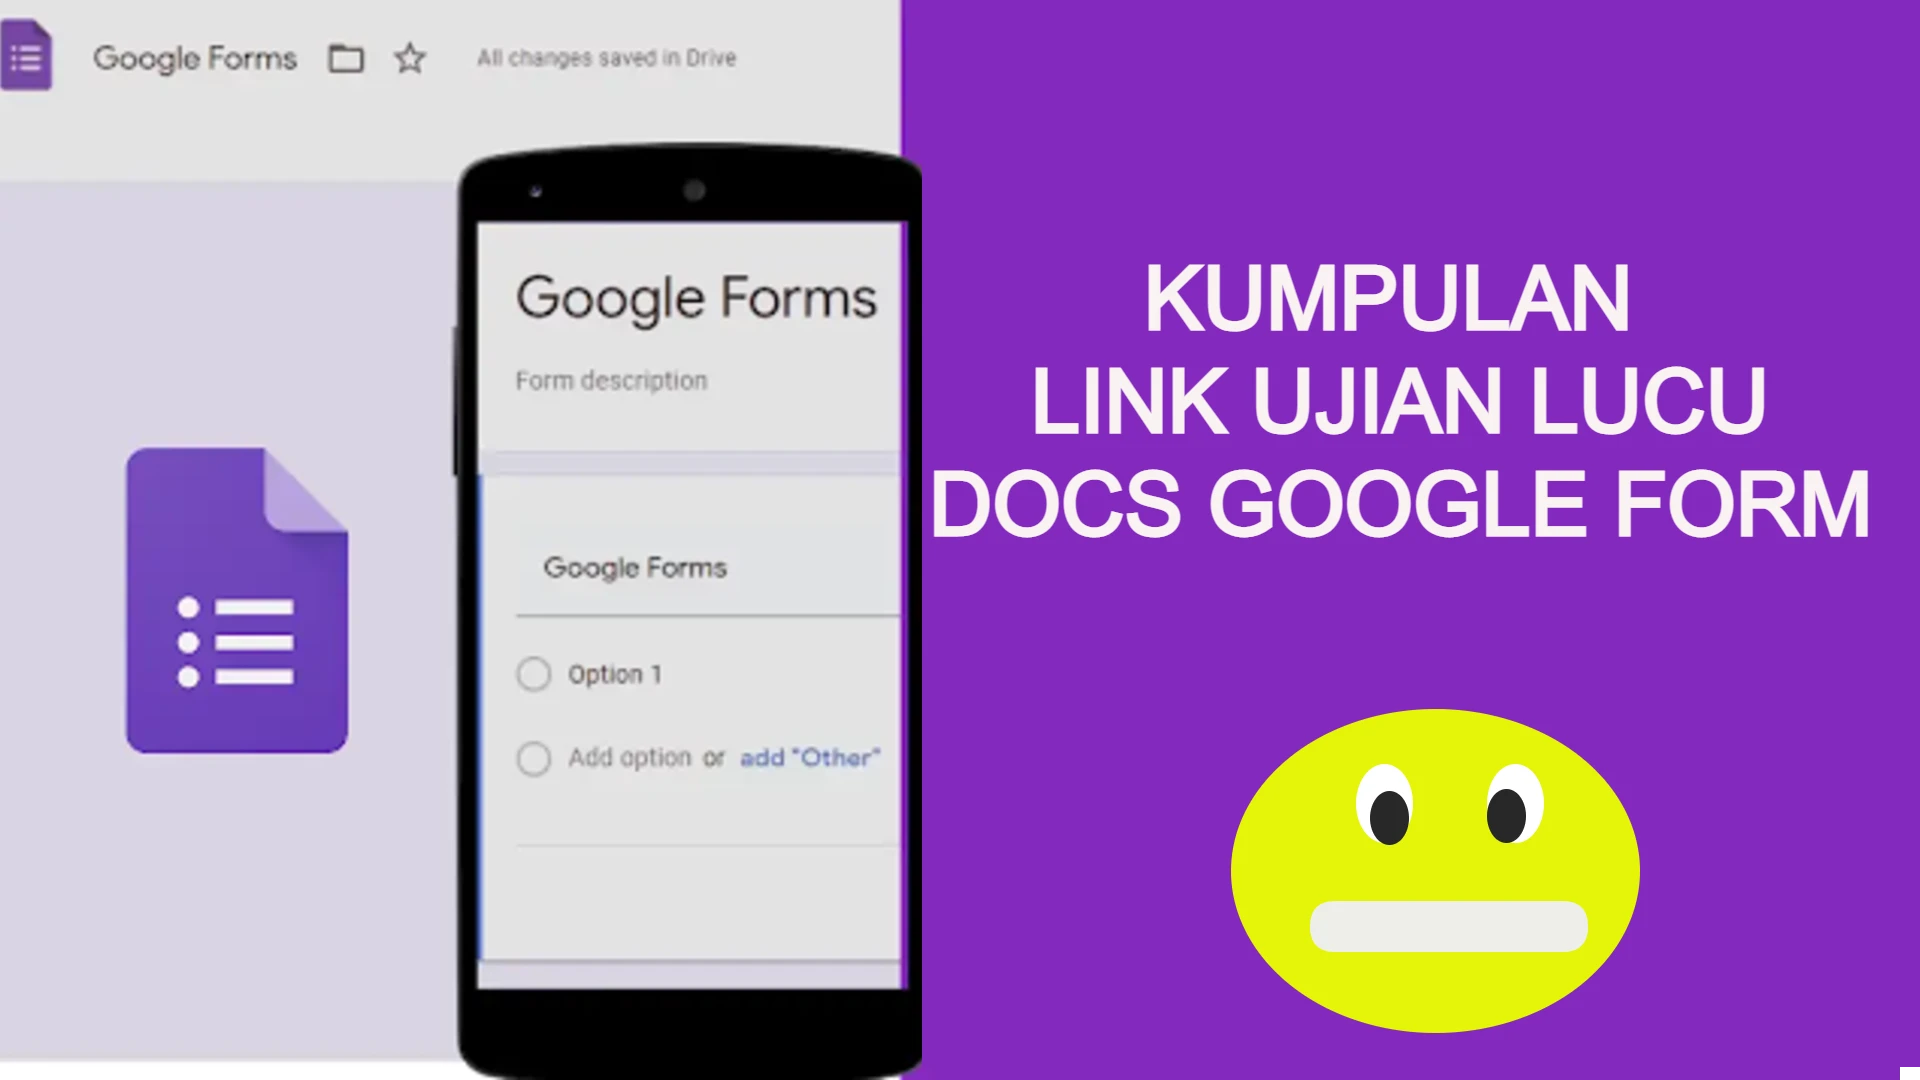 Kumpulan Link Ujian Lucu Docs Google Form